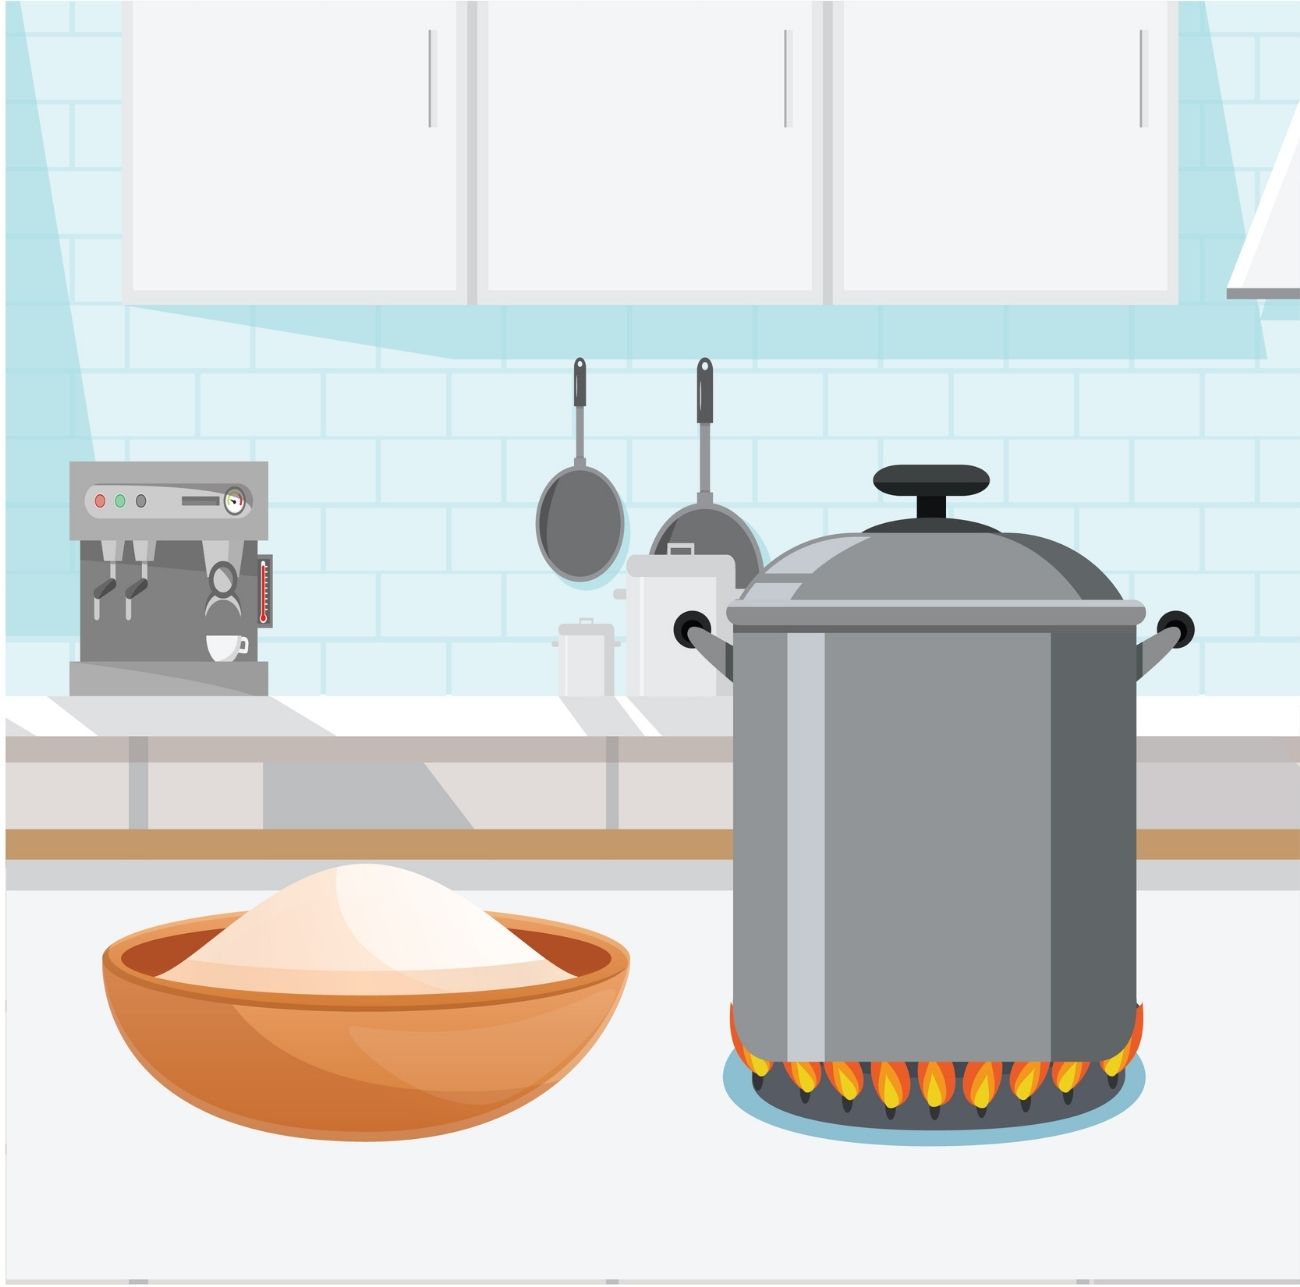 whisk the gravy in flour pressure cooker